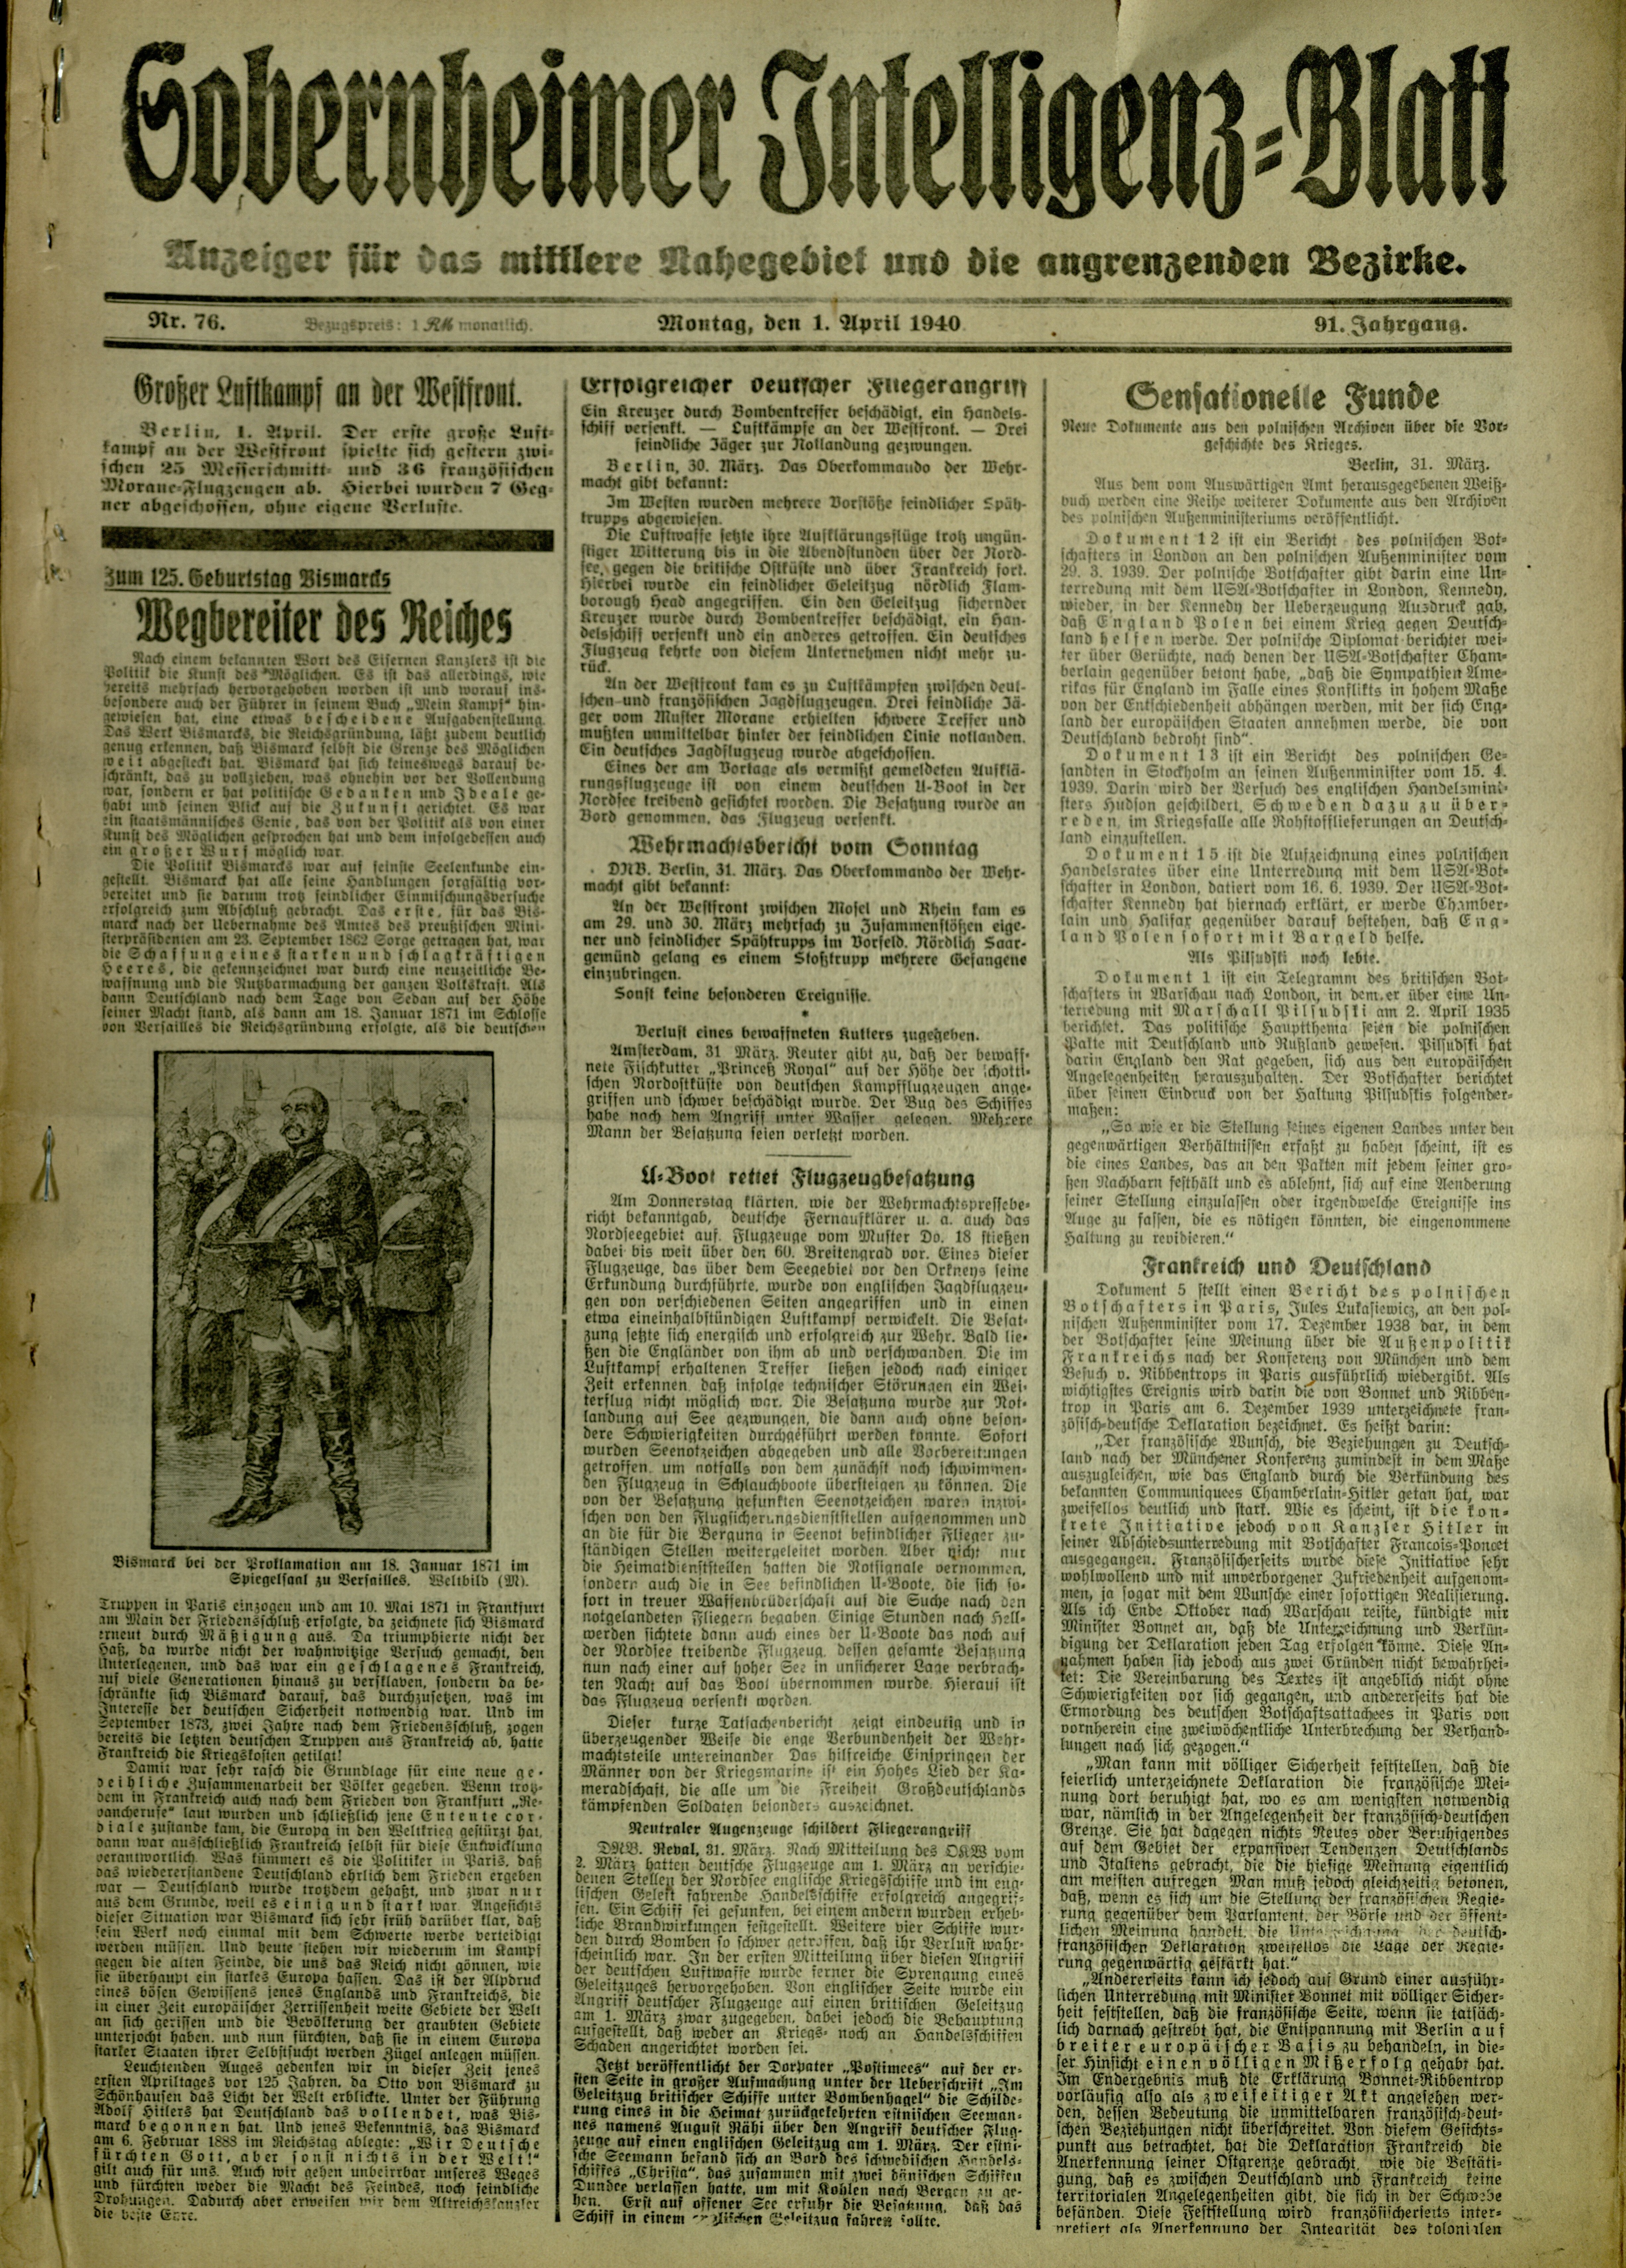 Zeitung: Sobernheimer Intelligenzblatt; April 1940, Jg. 91 Nr. 76 (Heimatmuseum Bad Sobernheim CC BY-NC-SA)